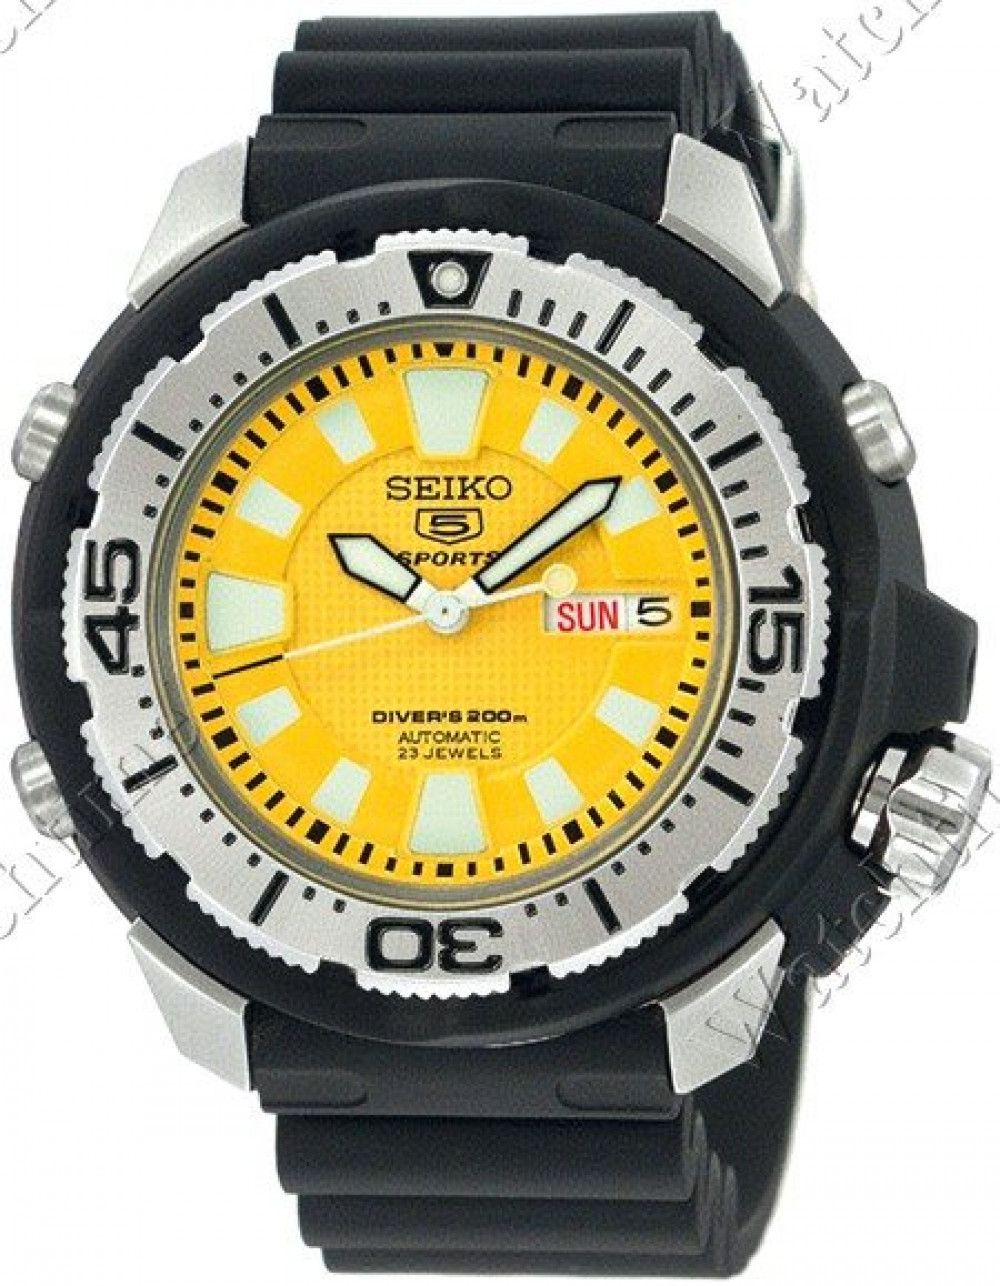 Zegarek firmy Seiko, model Automatic